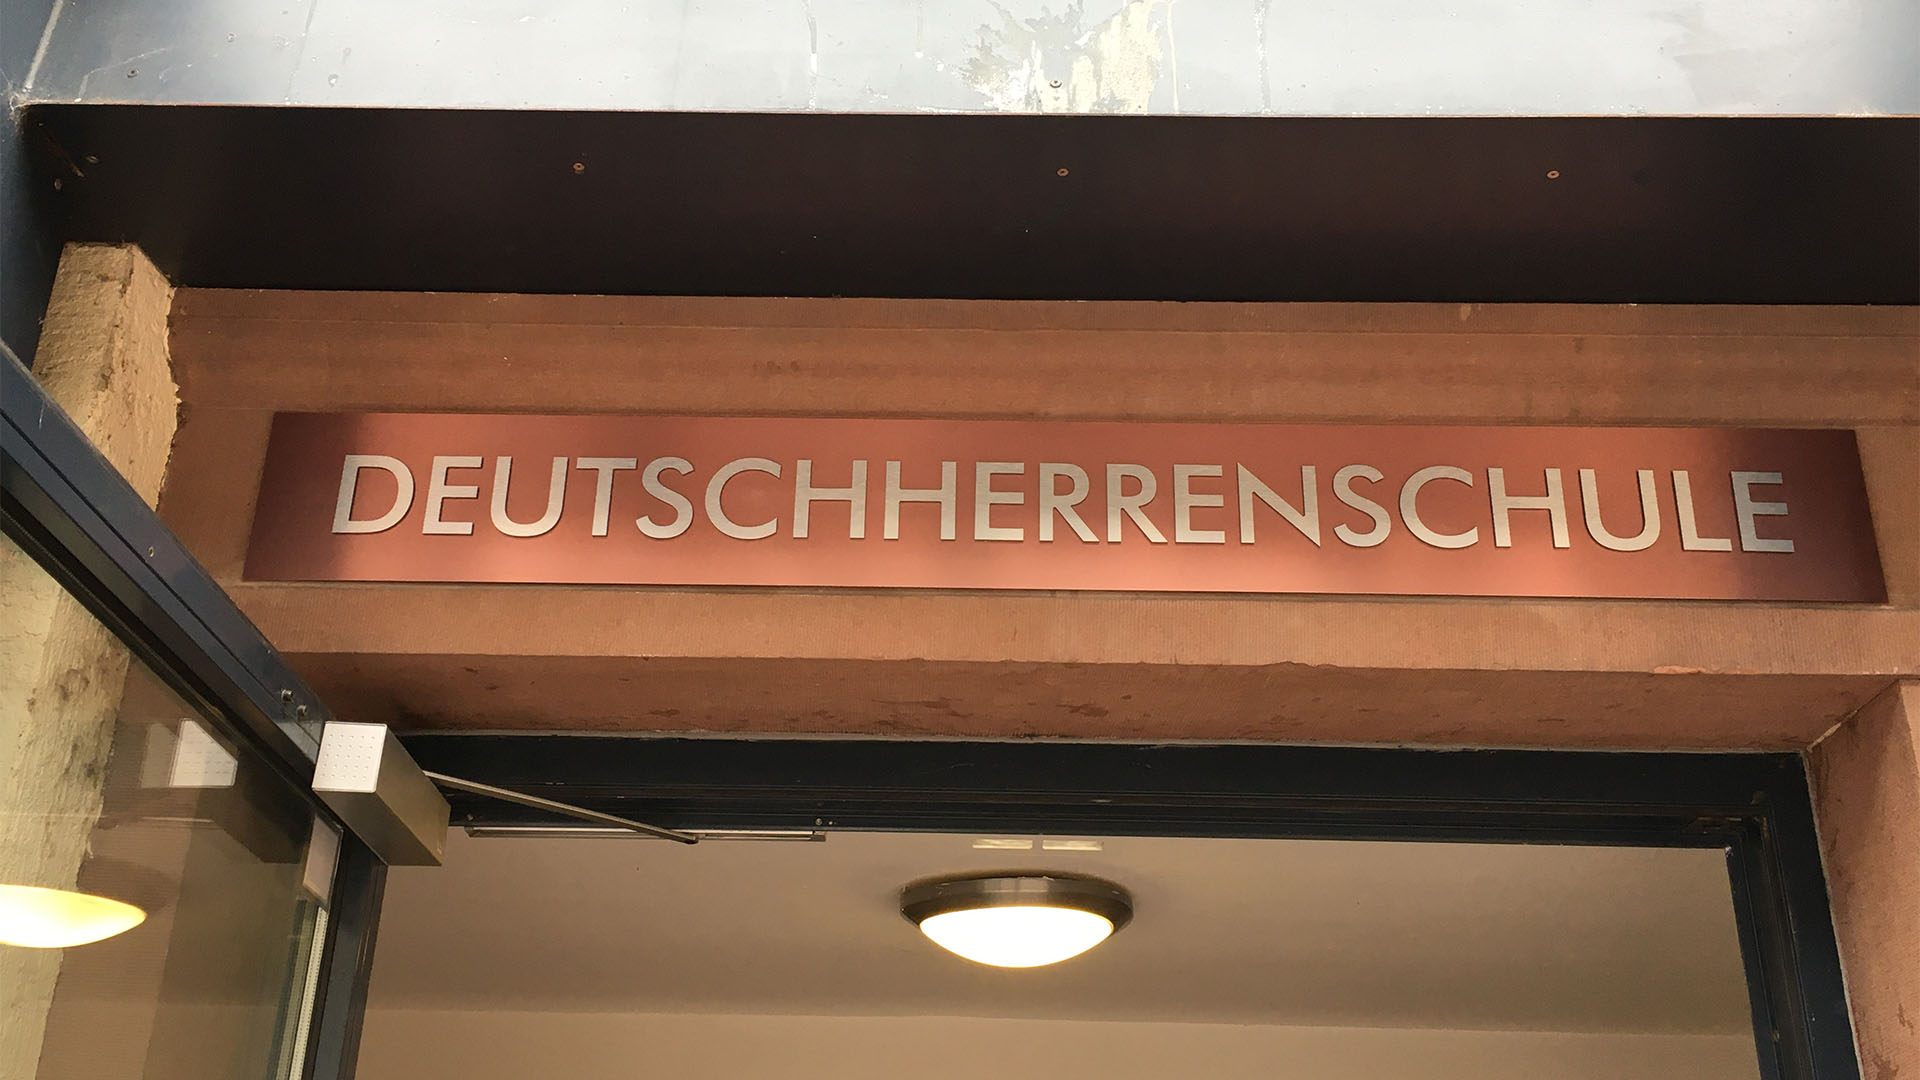 Deutschherrenschule-Eingangsschild-frankfurter-schilderfabrik-meides-2021